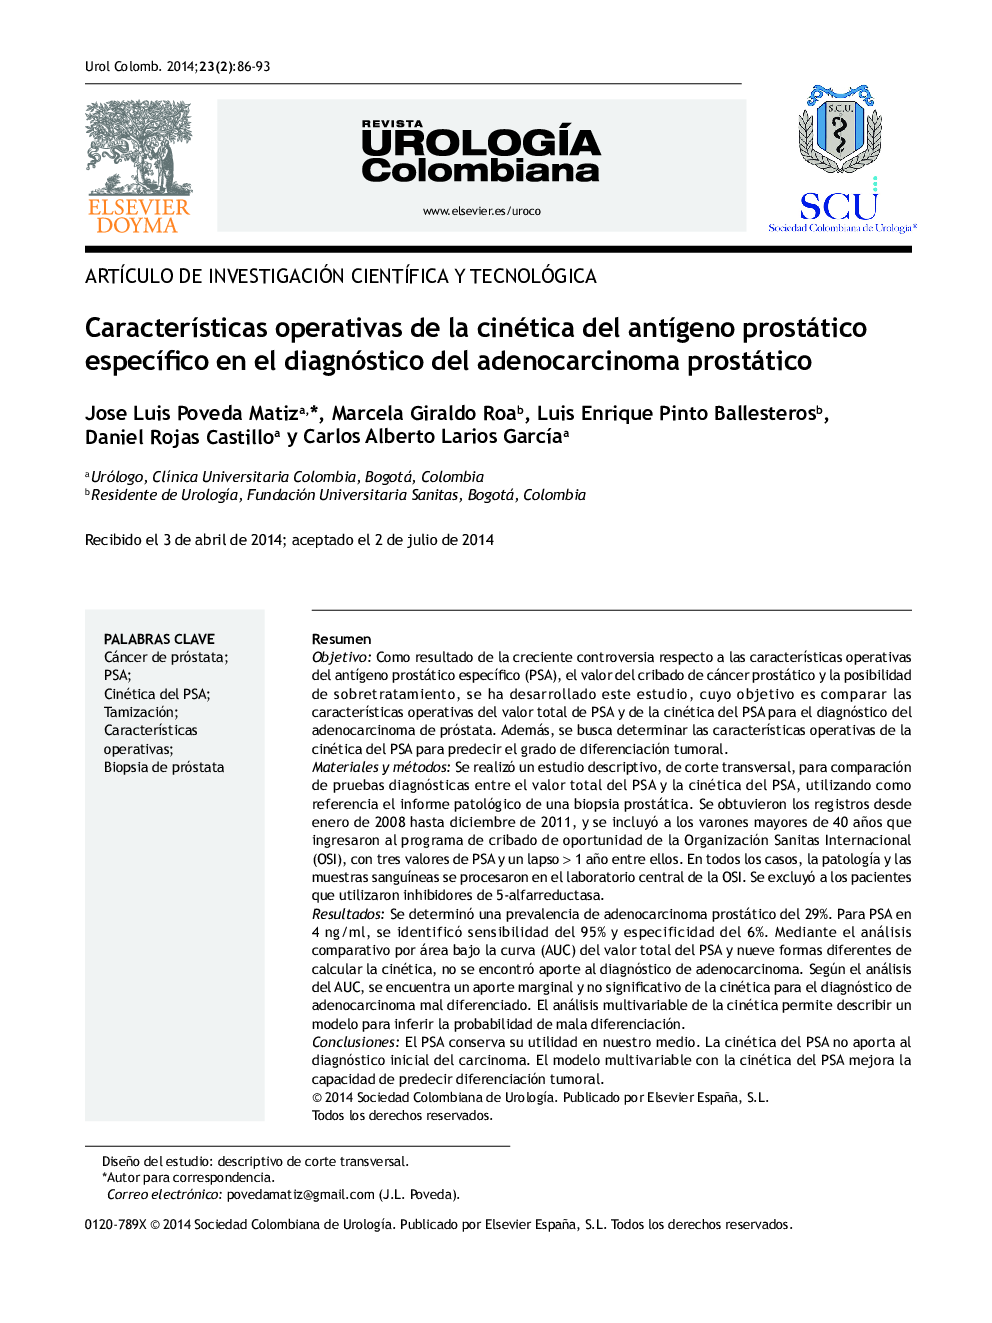 CaracterÃ­sticas operativas de la cinética del antÃ­geno prostático especÃ­fico en el diagnóstico del adenocarcinoma prostático